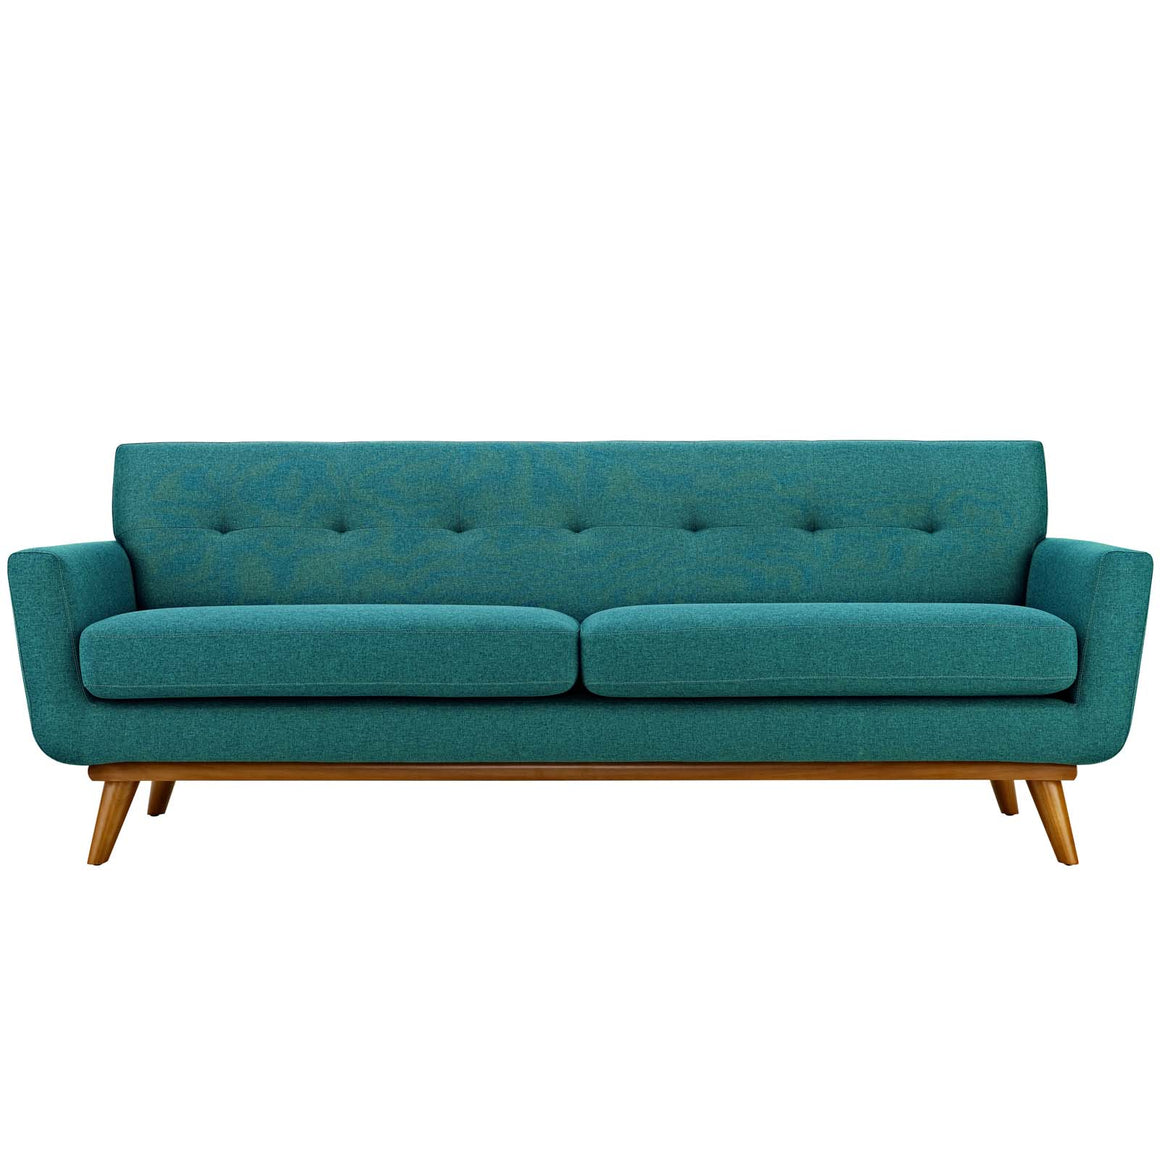 Engage Upholstered Sofa